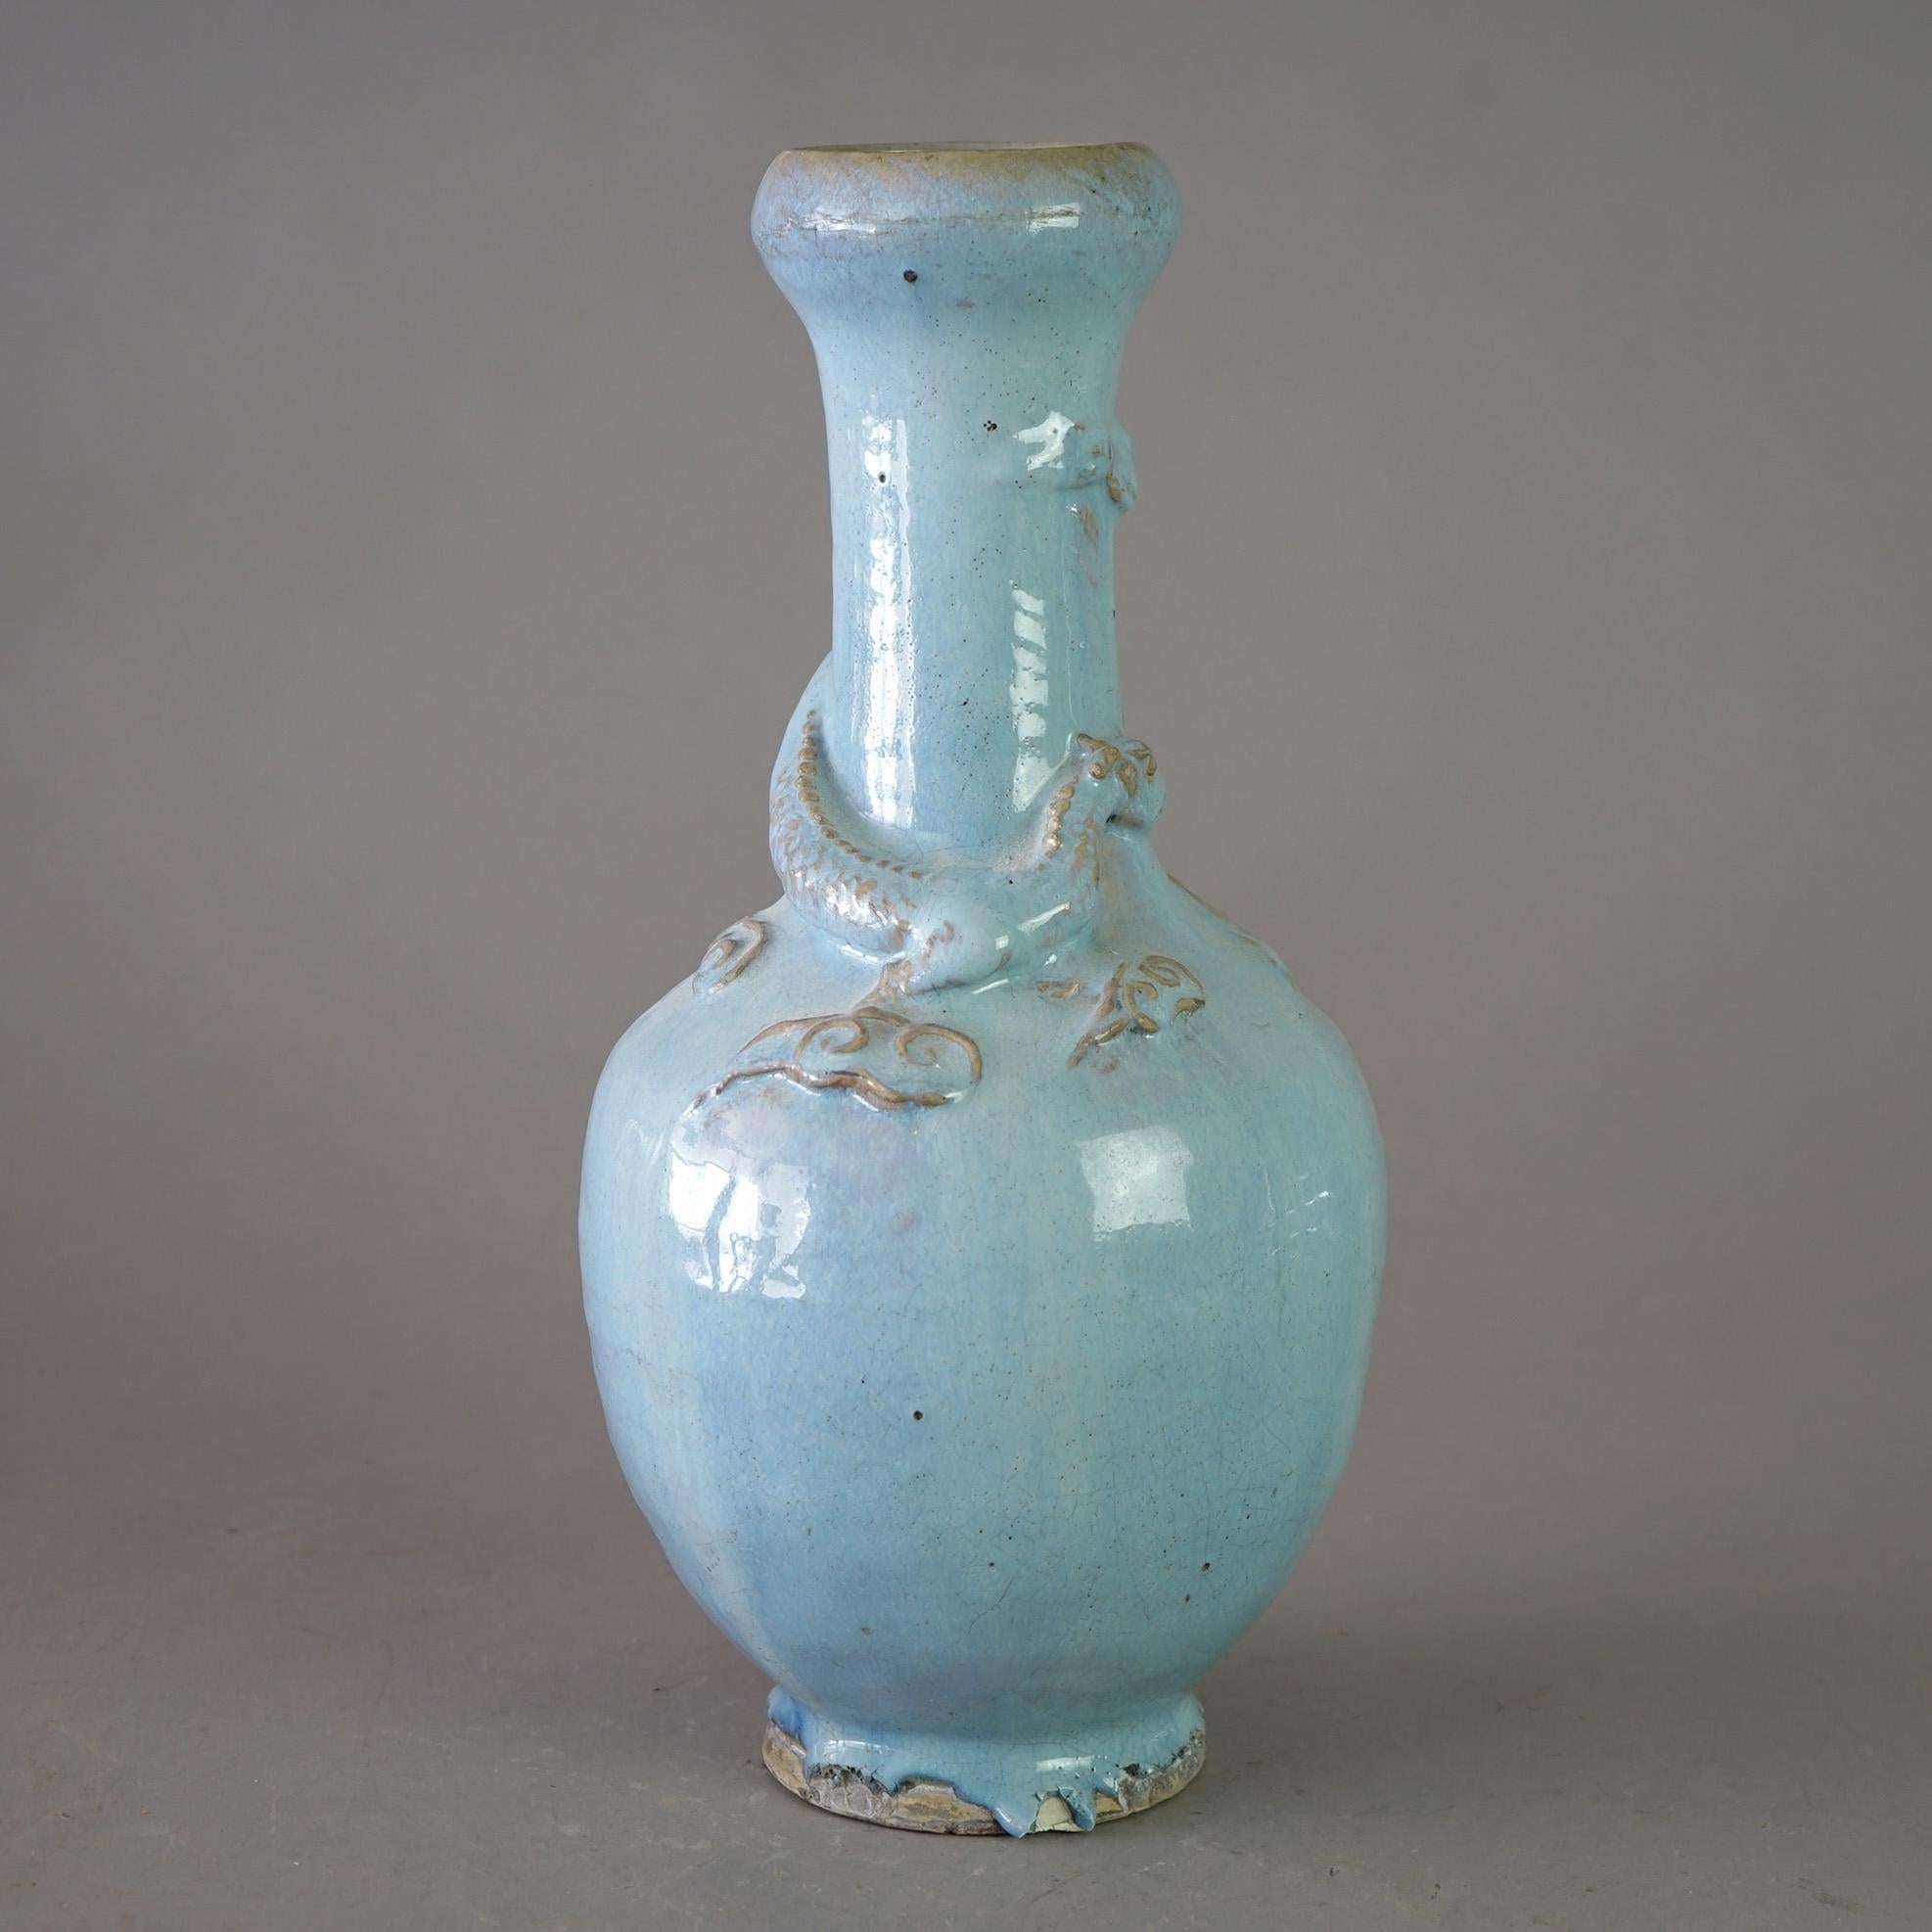 Un vase chinois figuratif ancien offre une construction en poterie d'art avec un dragon appliqué, c1920

Mesures - 15 